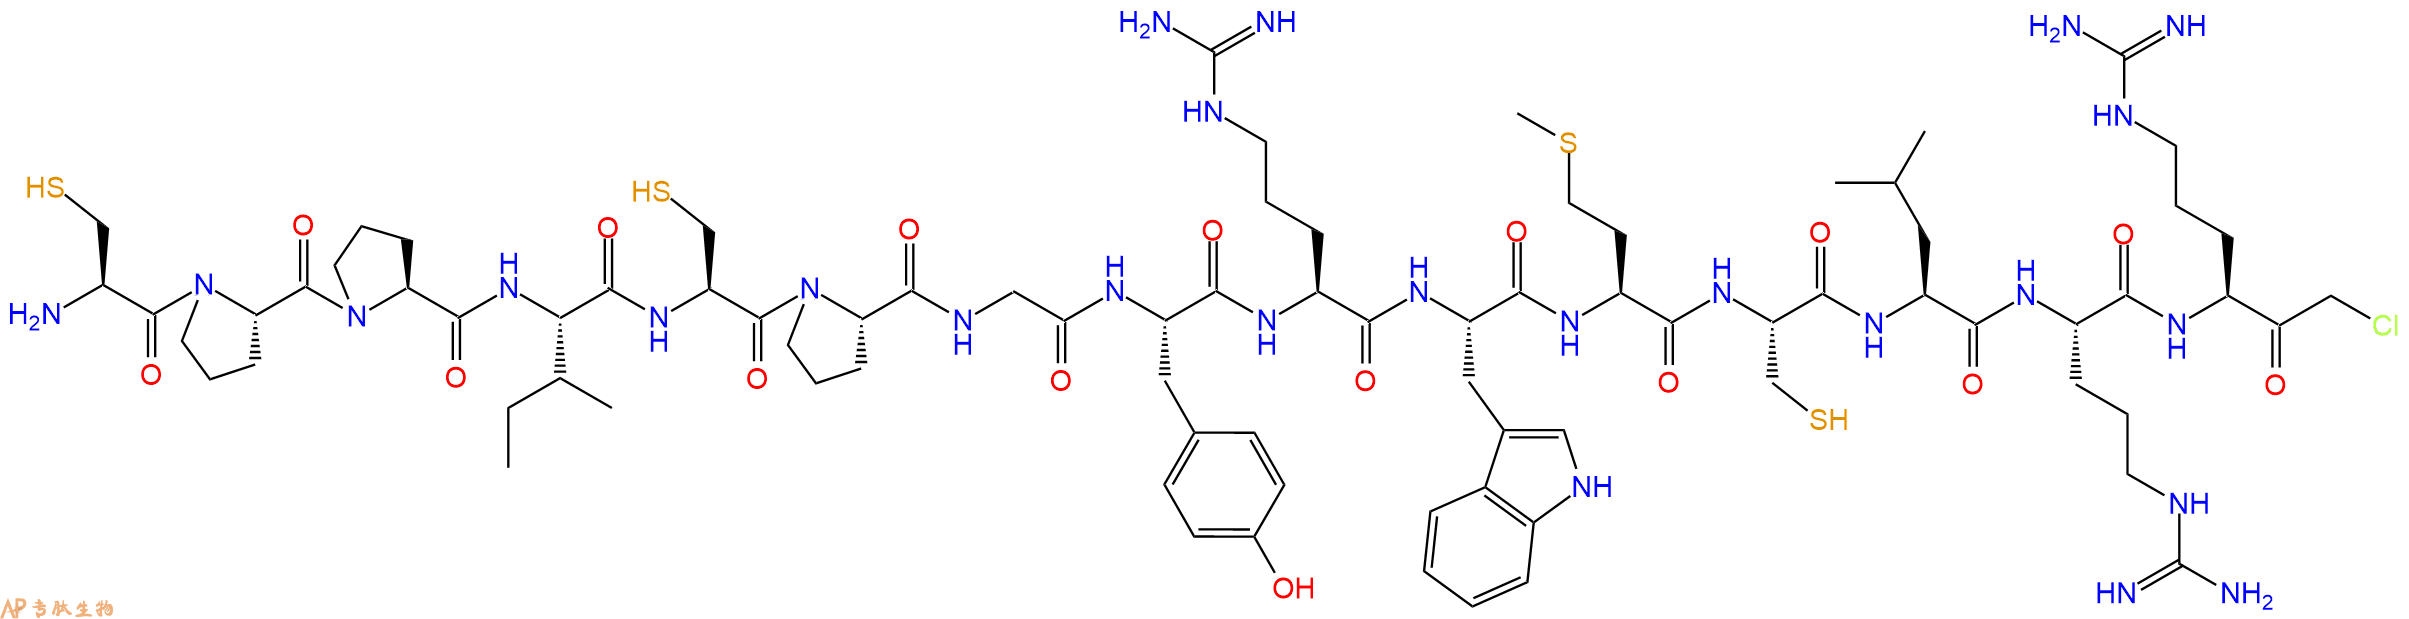 专肽生物产品H2N-Cys-Pro-Pro-Ile-Cys-Pro-Gly-Tyr-Arg-Trp-Met-Cy